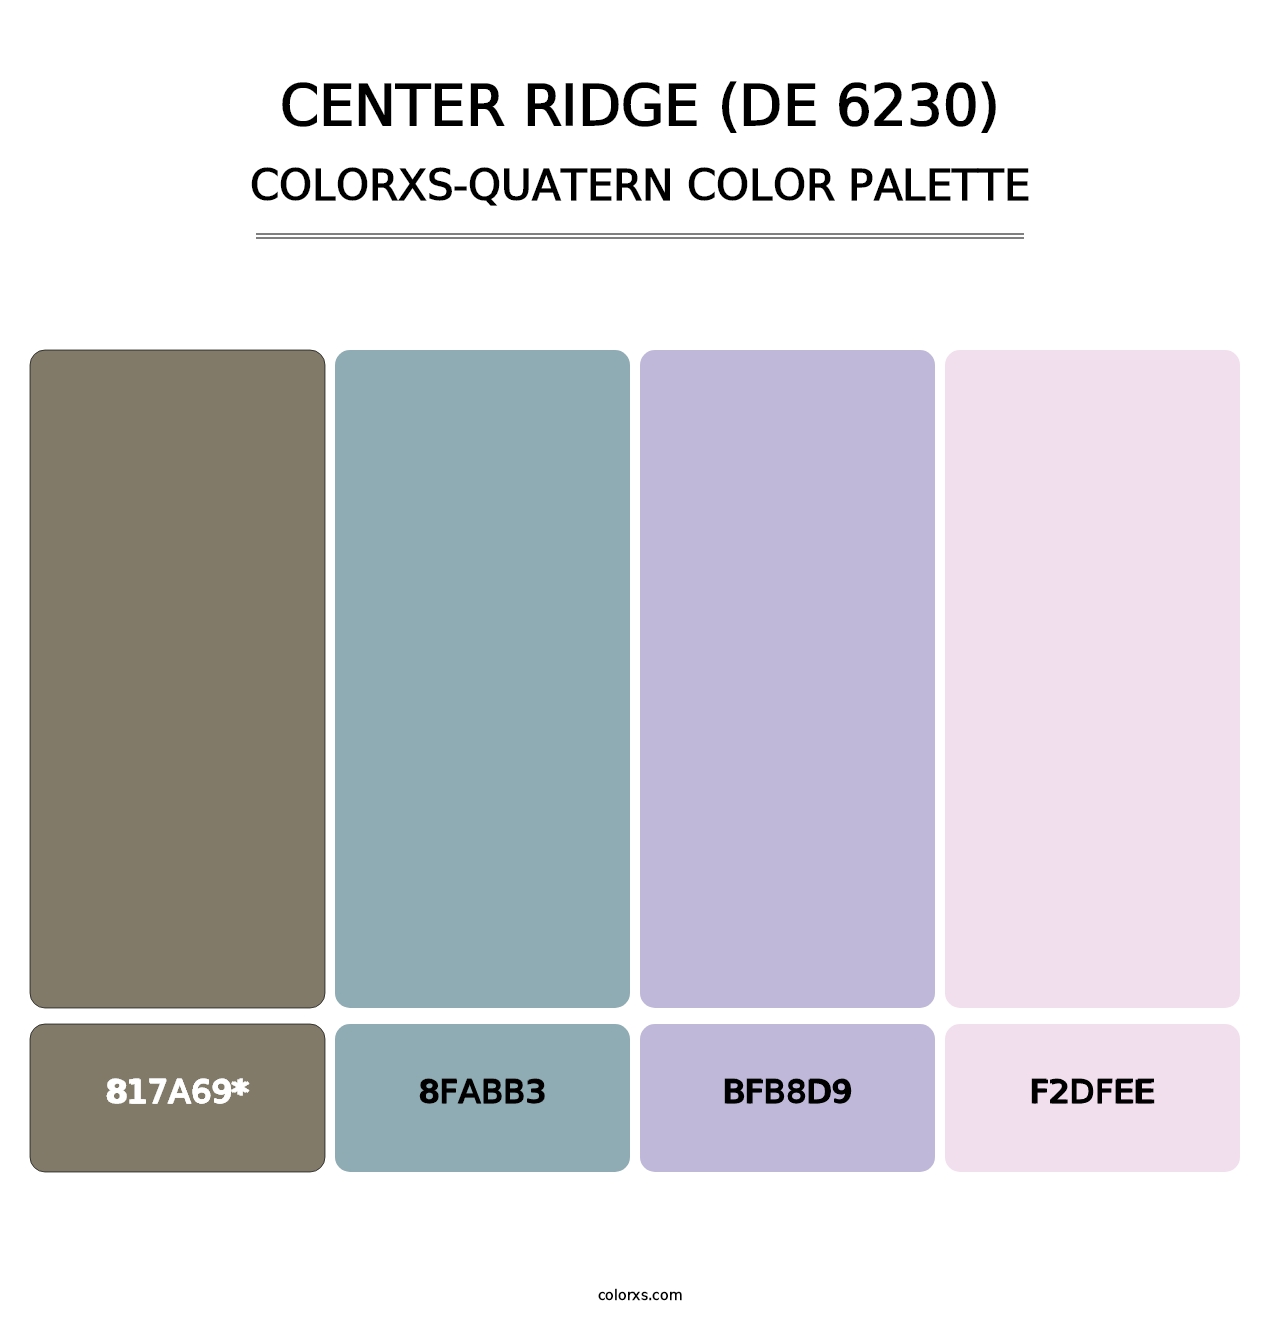 Center Ridge (DE 6230) - Colorxs Quatern Palette